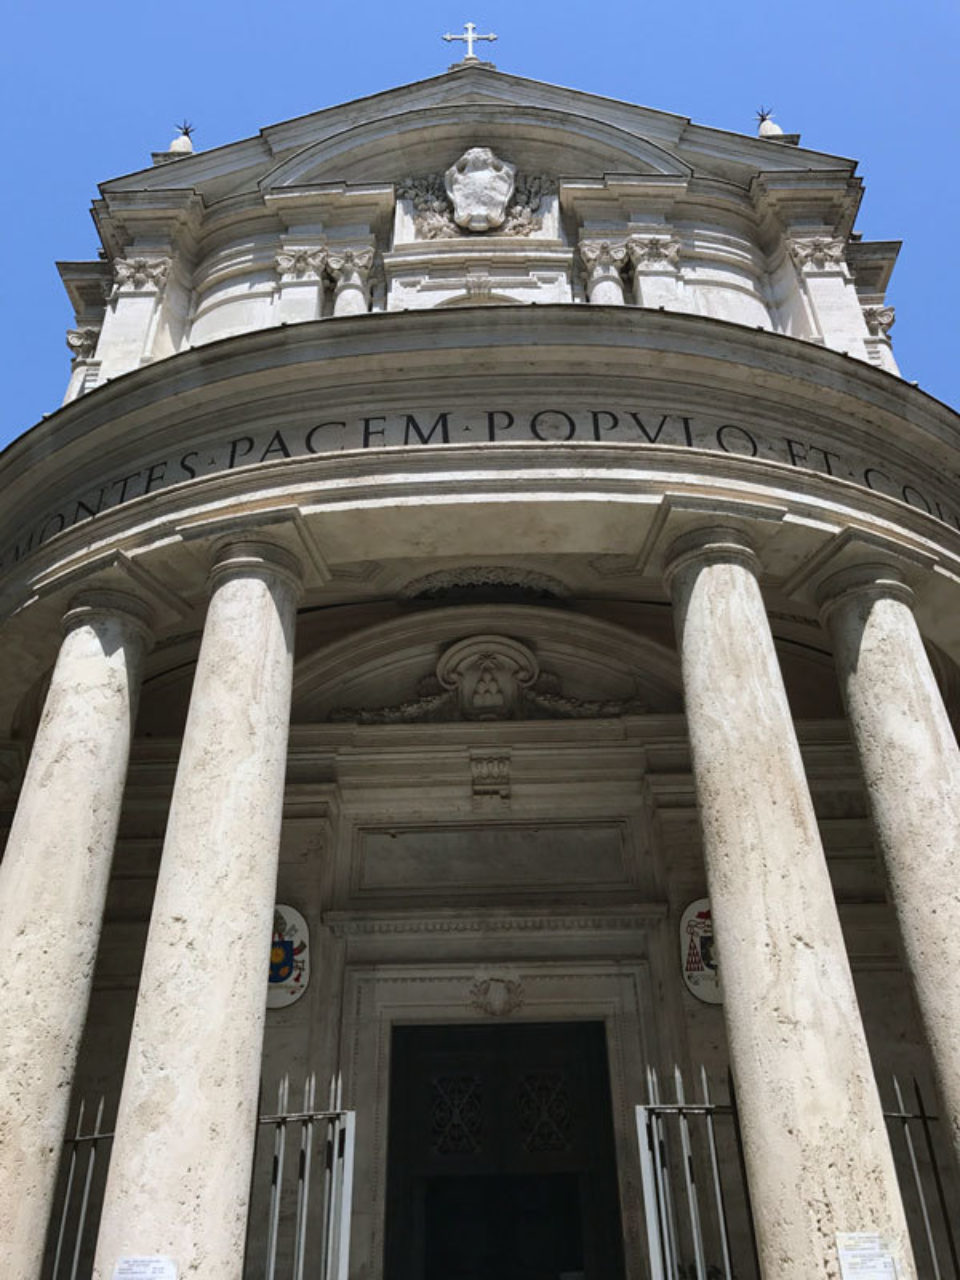 The church of Santa Maria della Pace